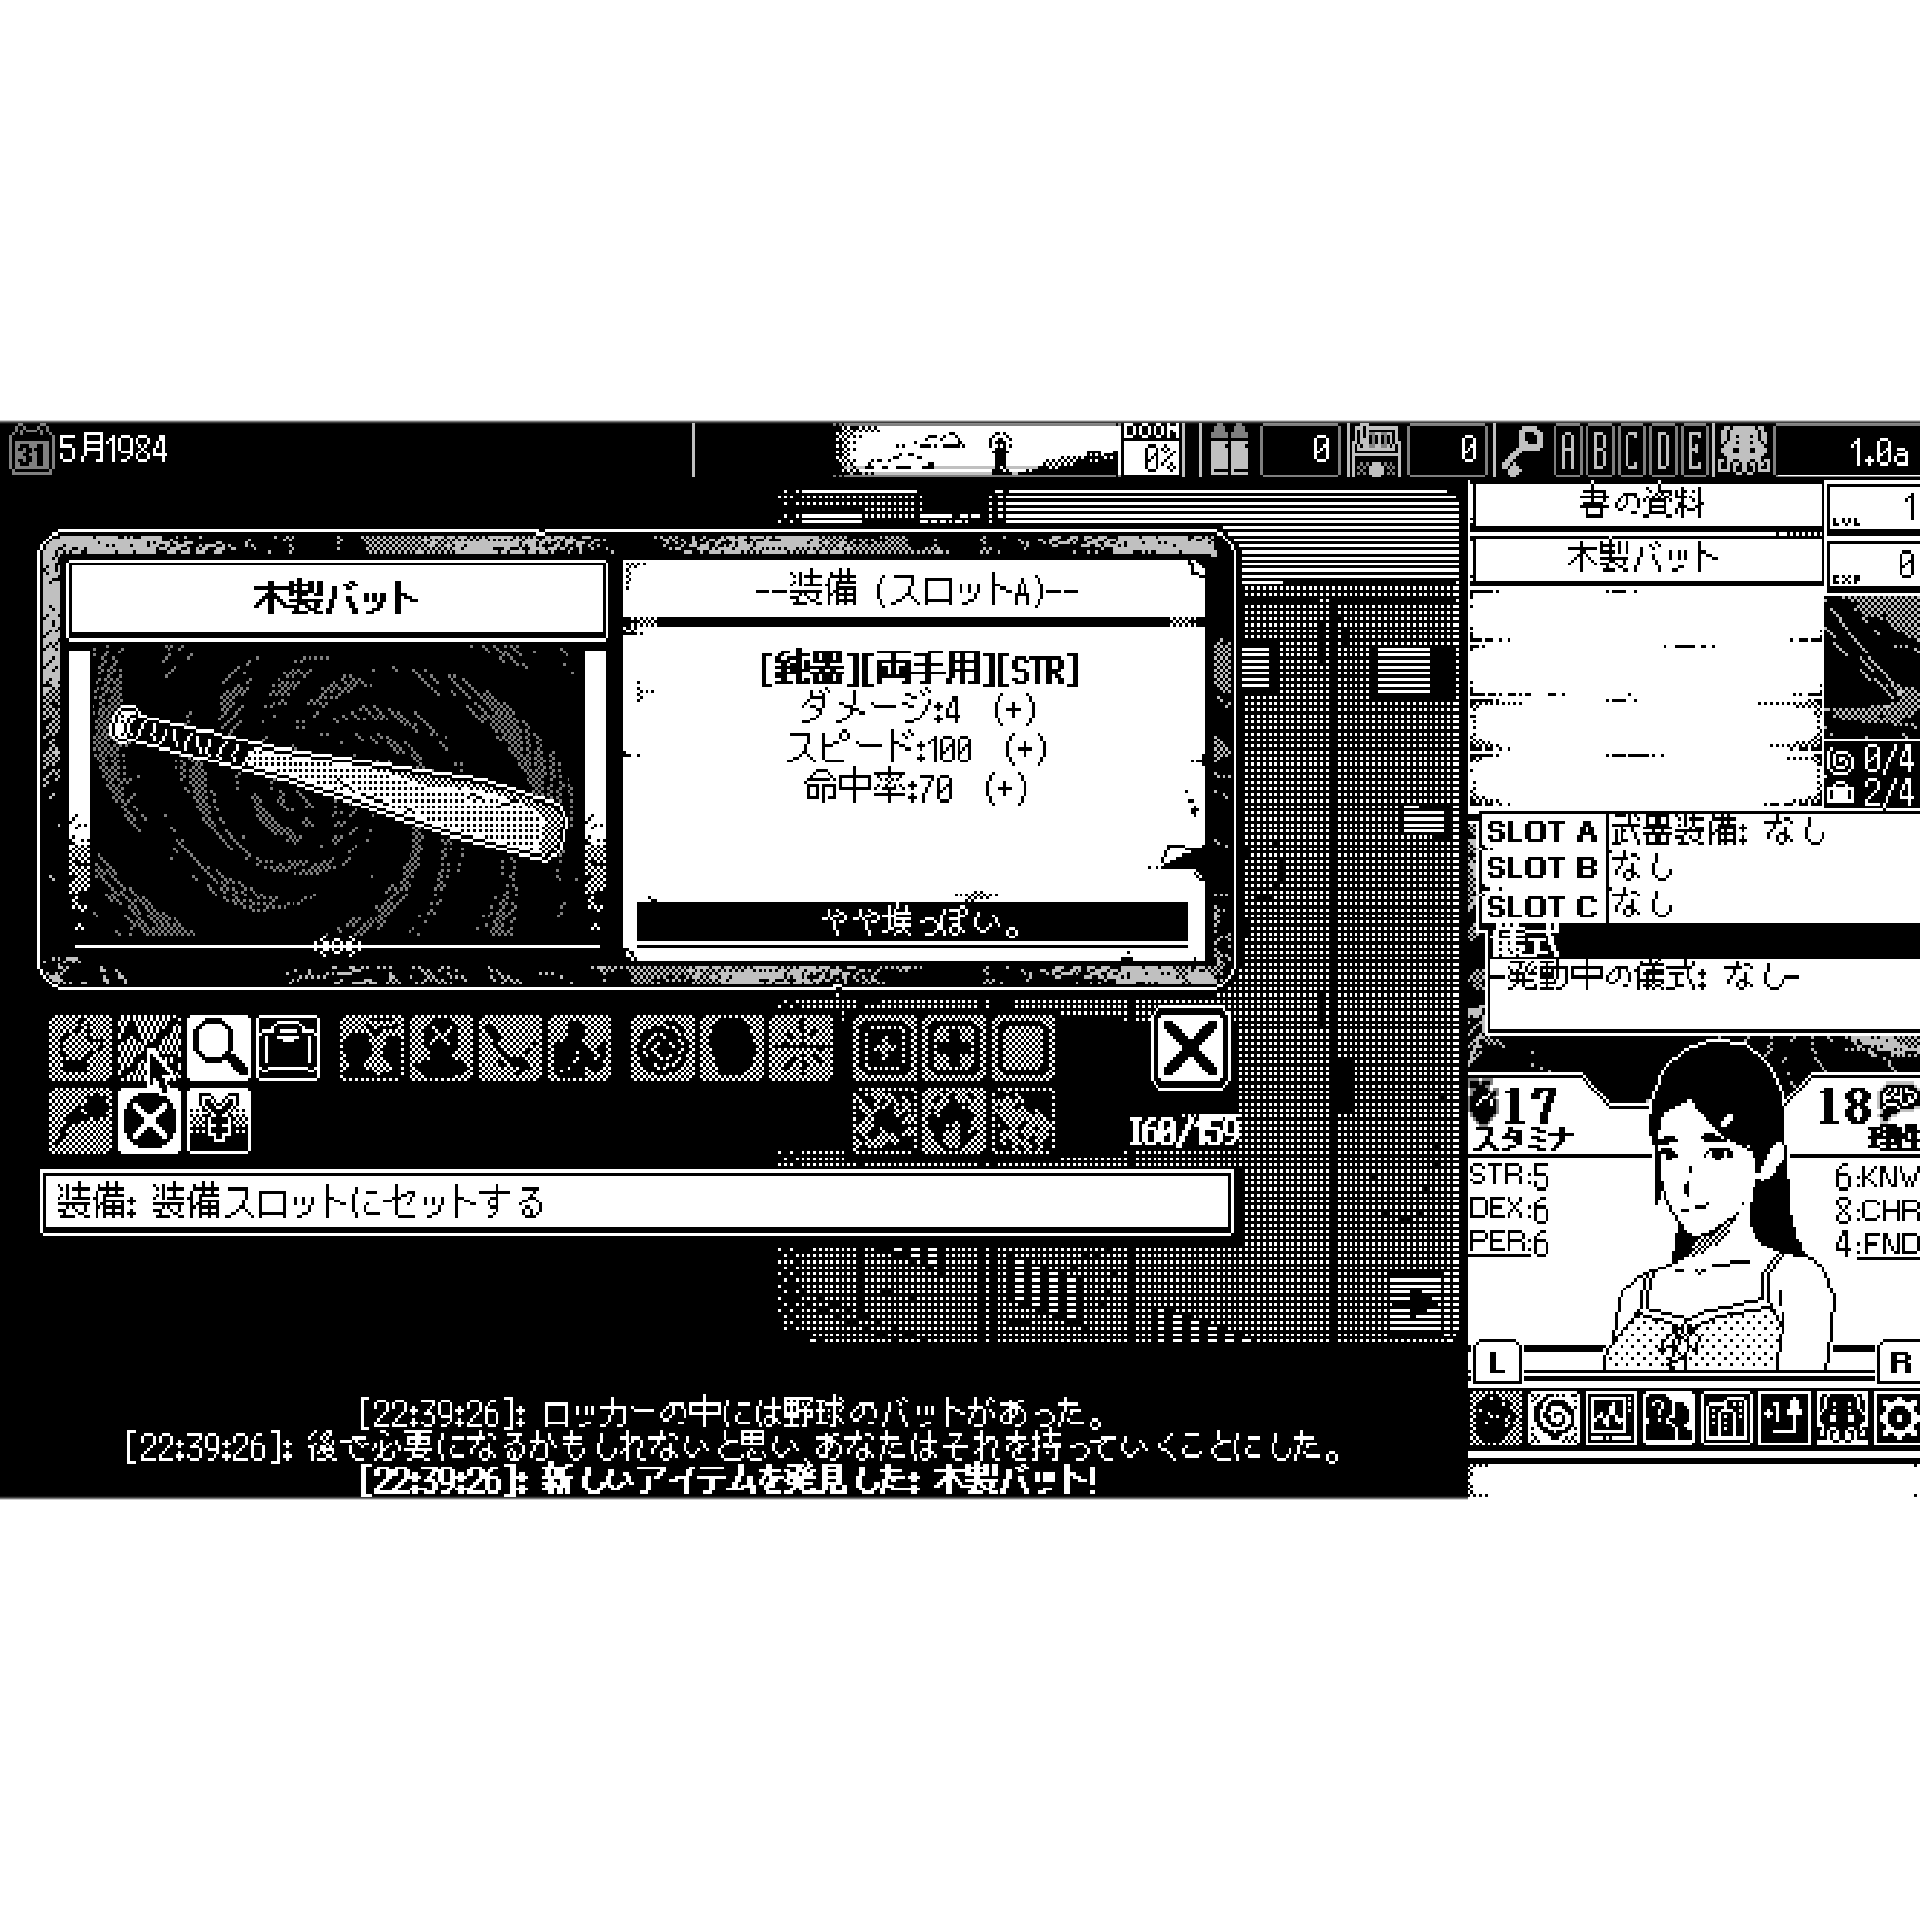 恐怖の世界 [PS4] 初回特典/オリジナル特典付 (数量限定)(日本版)